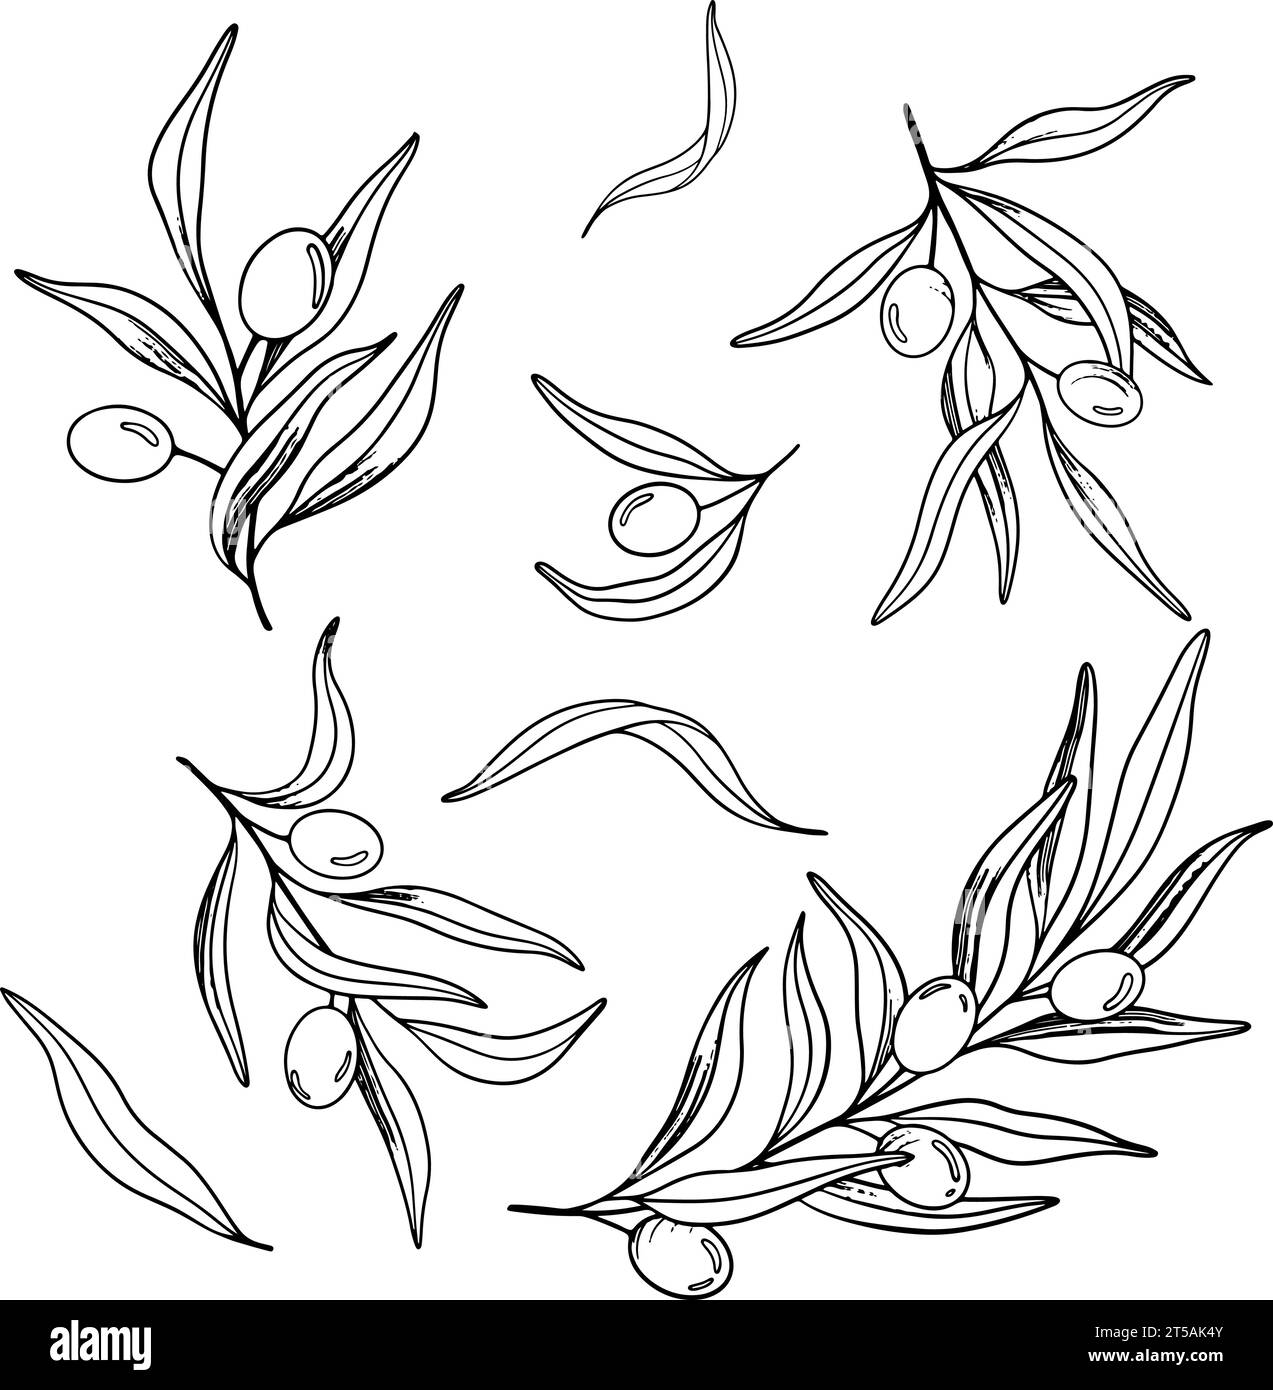 Croquis de branche d'olivier avec des baies et des feuilles. Illustration de dessin vectoriel dessiné à la main. Dessin noir et blanc du symbole de l'Italie ou du grec pour Illustration de Vecteur